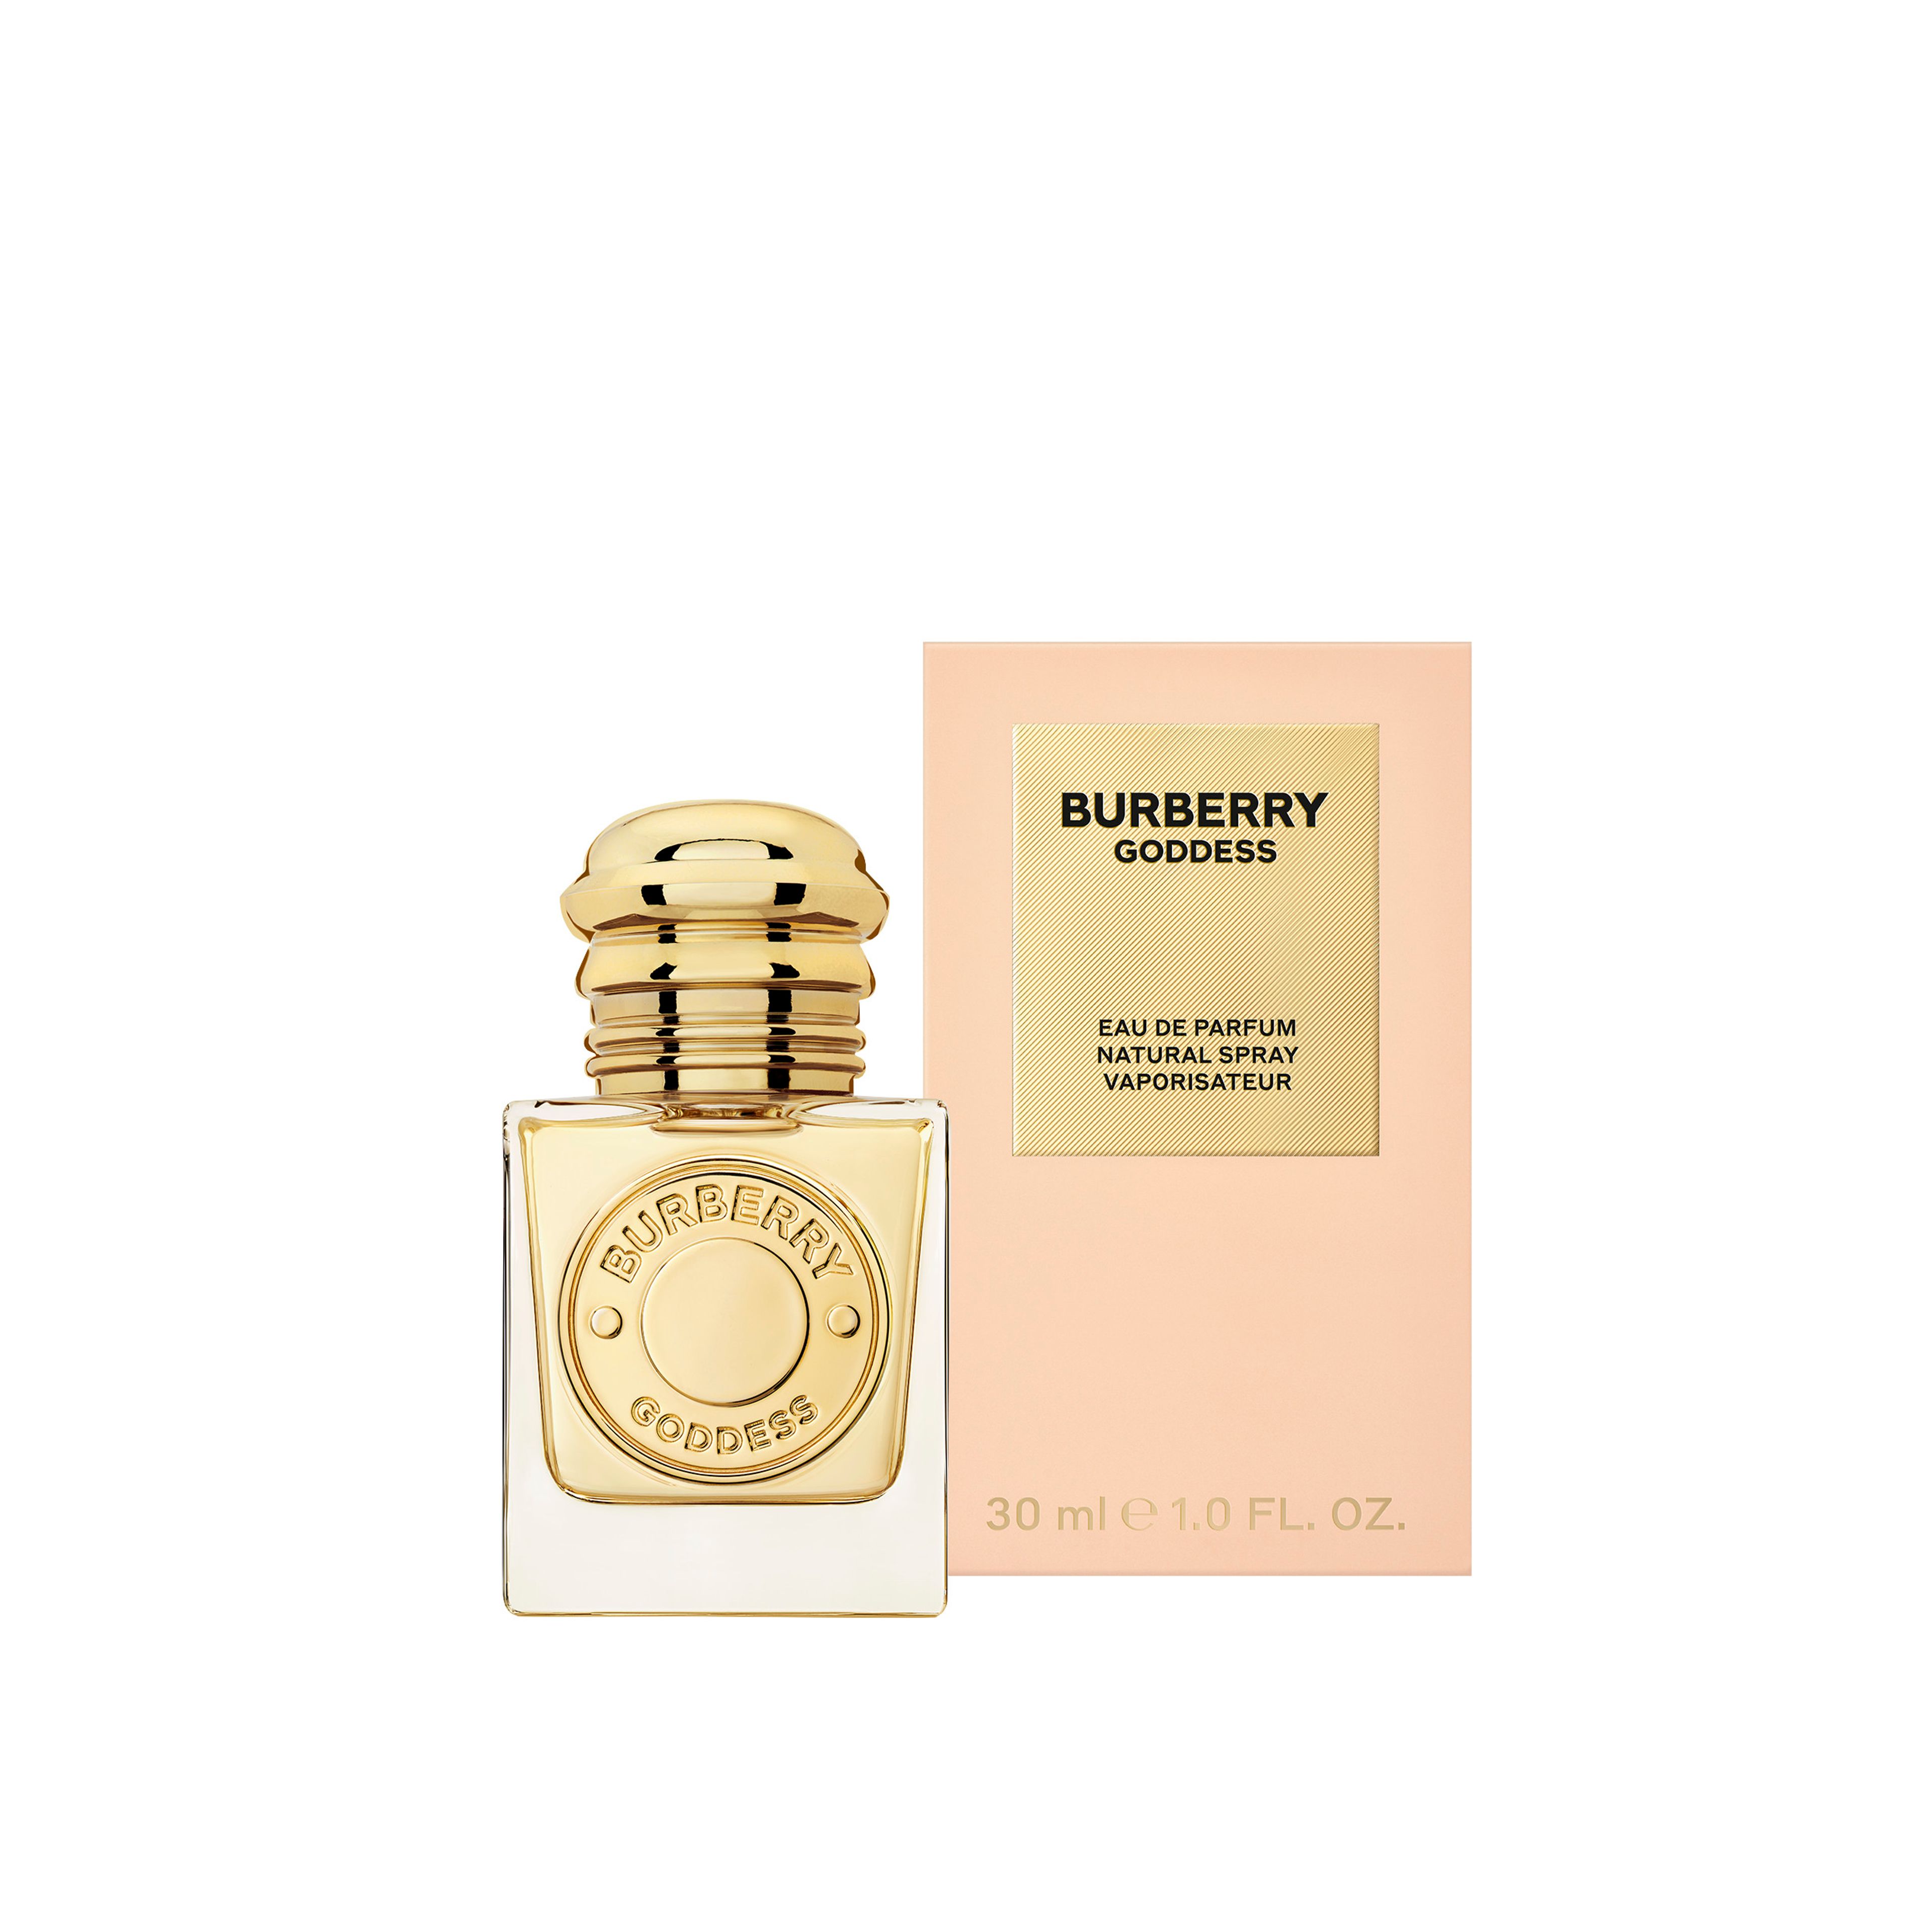 Burberry Burberry Goddess Eau De Parfum 3